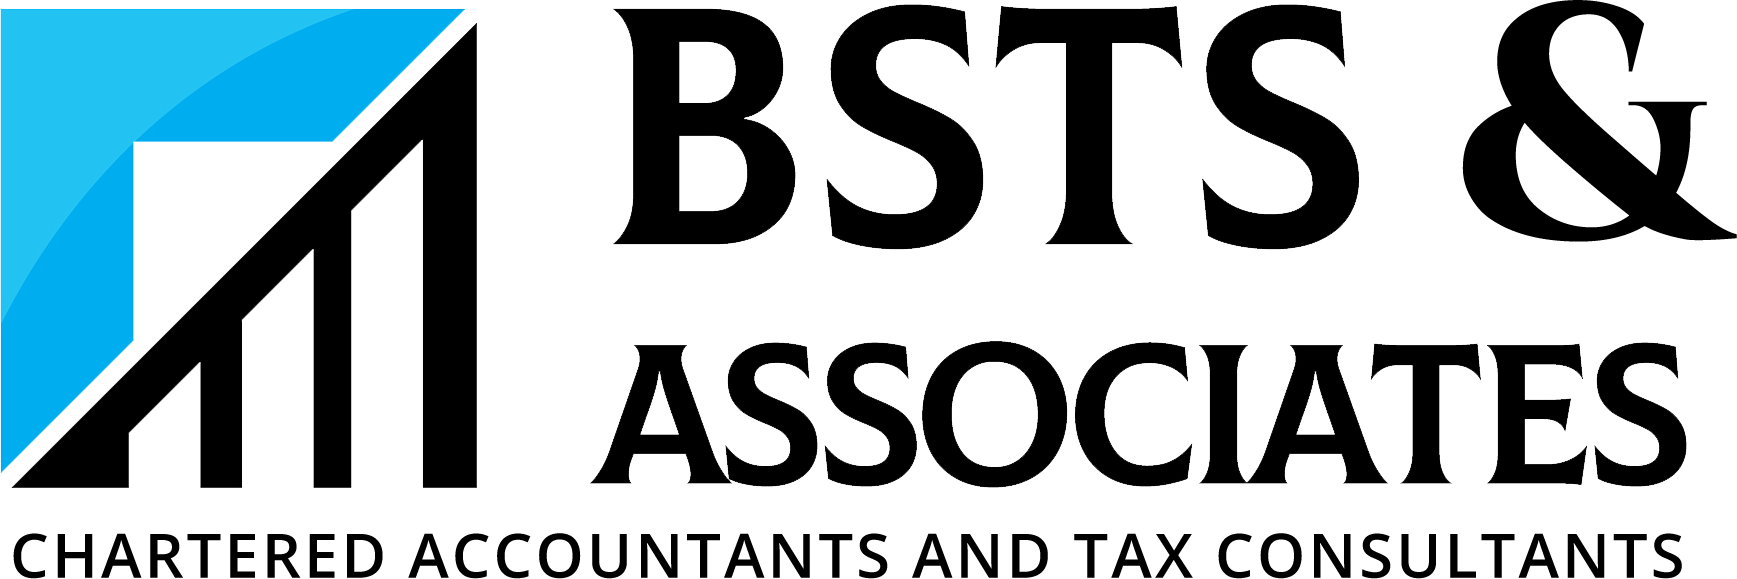 BSTS & Associates